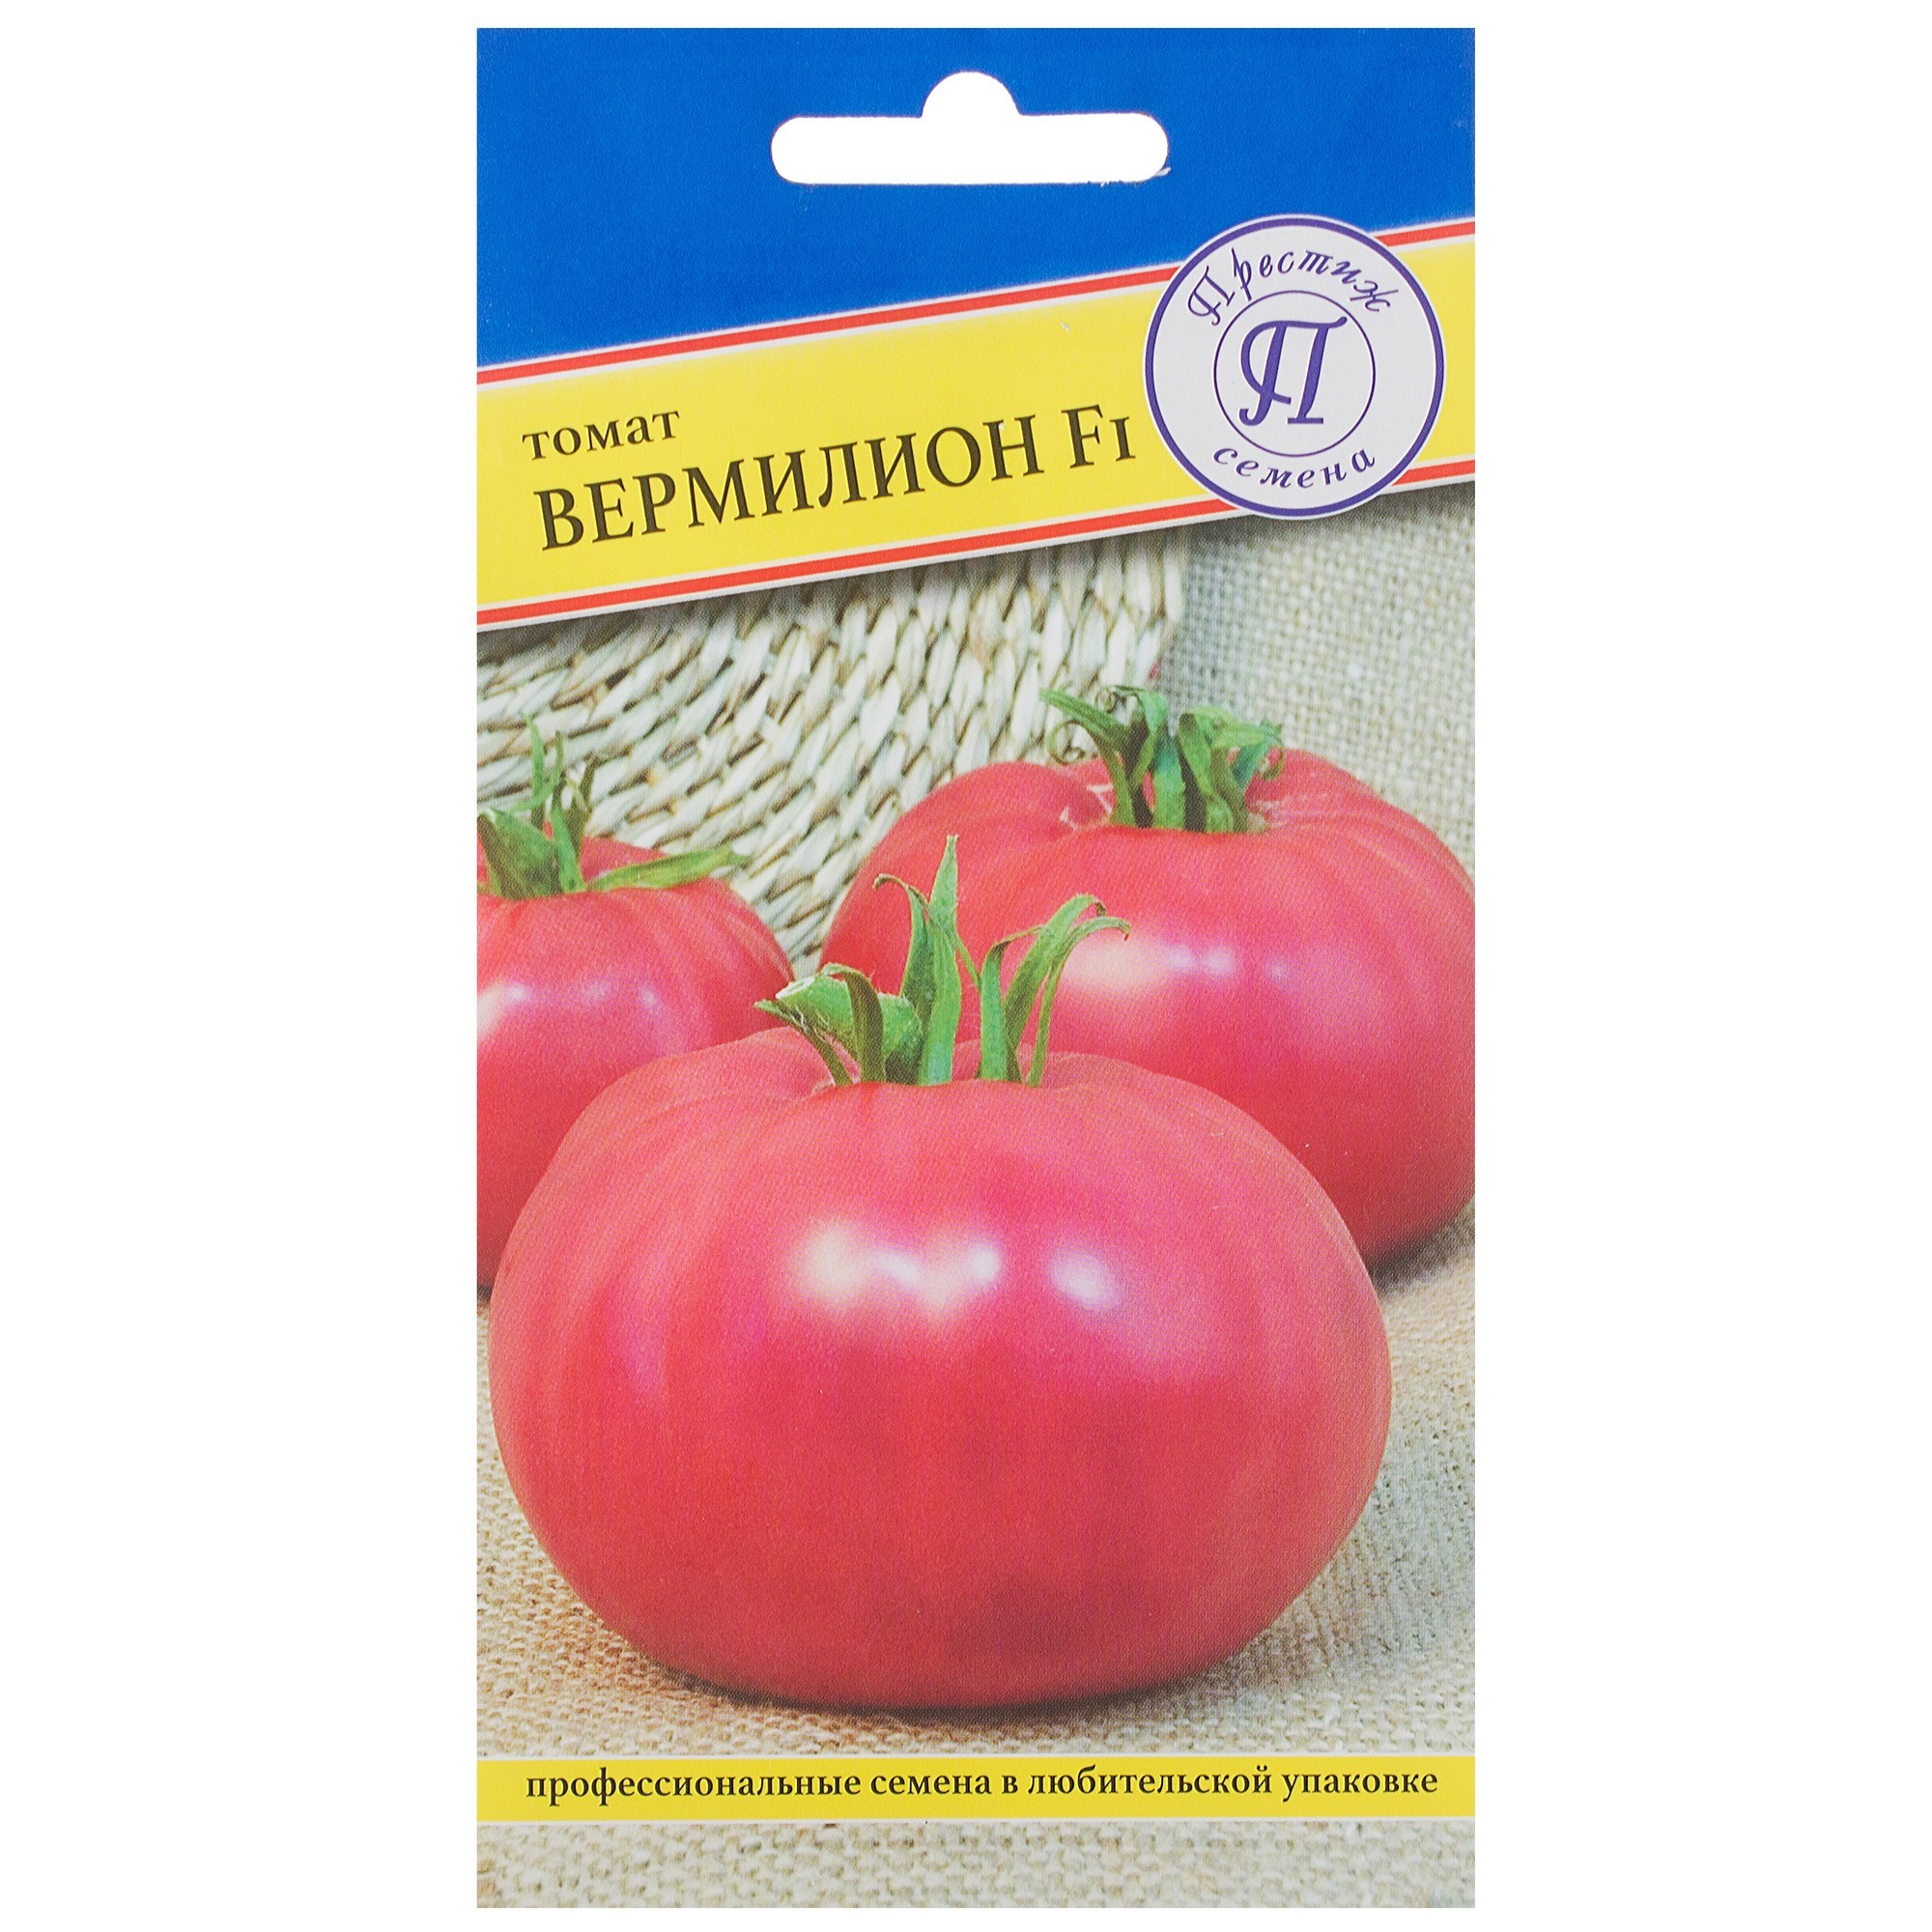 Описание сорта томата вермилион, его характеристика и урожайность – дачные дела